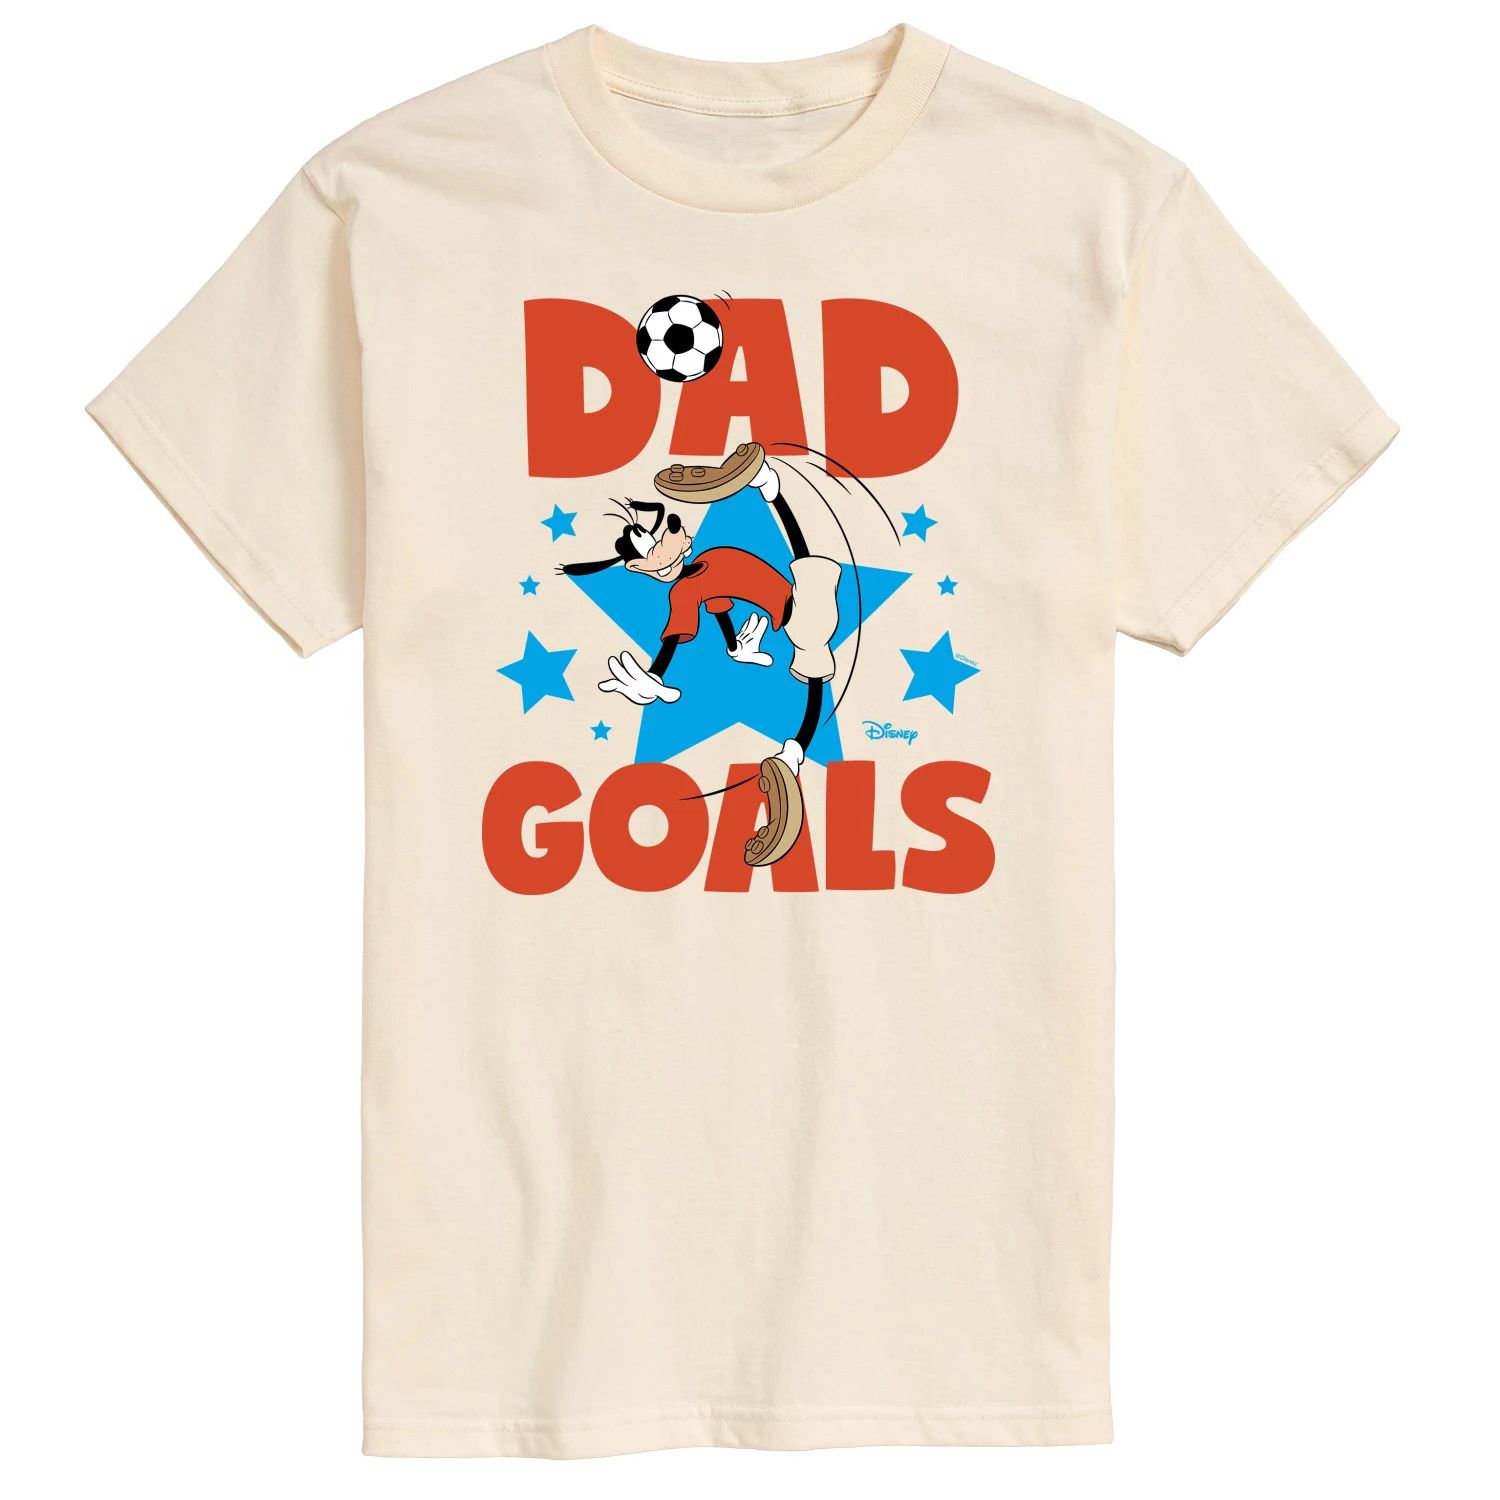 цена Мужская футболка Disney's Goofy Dad Goals с графическим рисунком